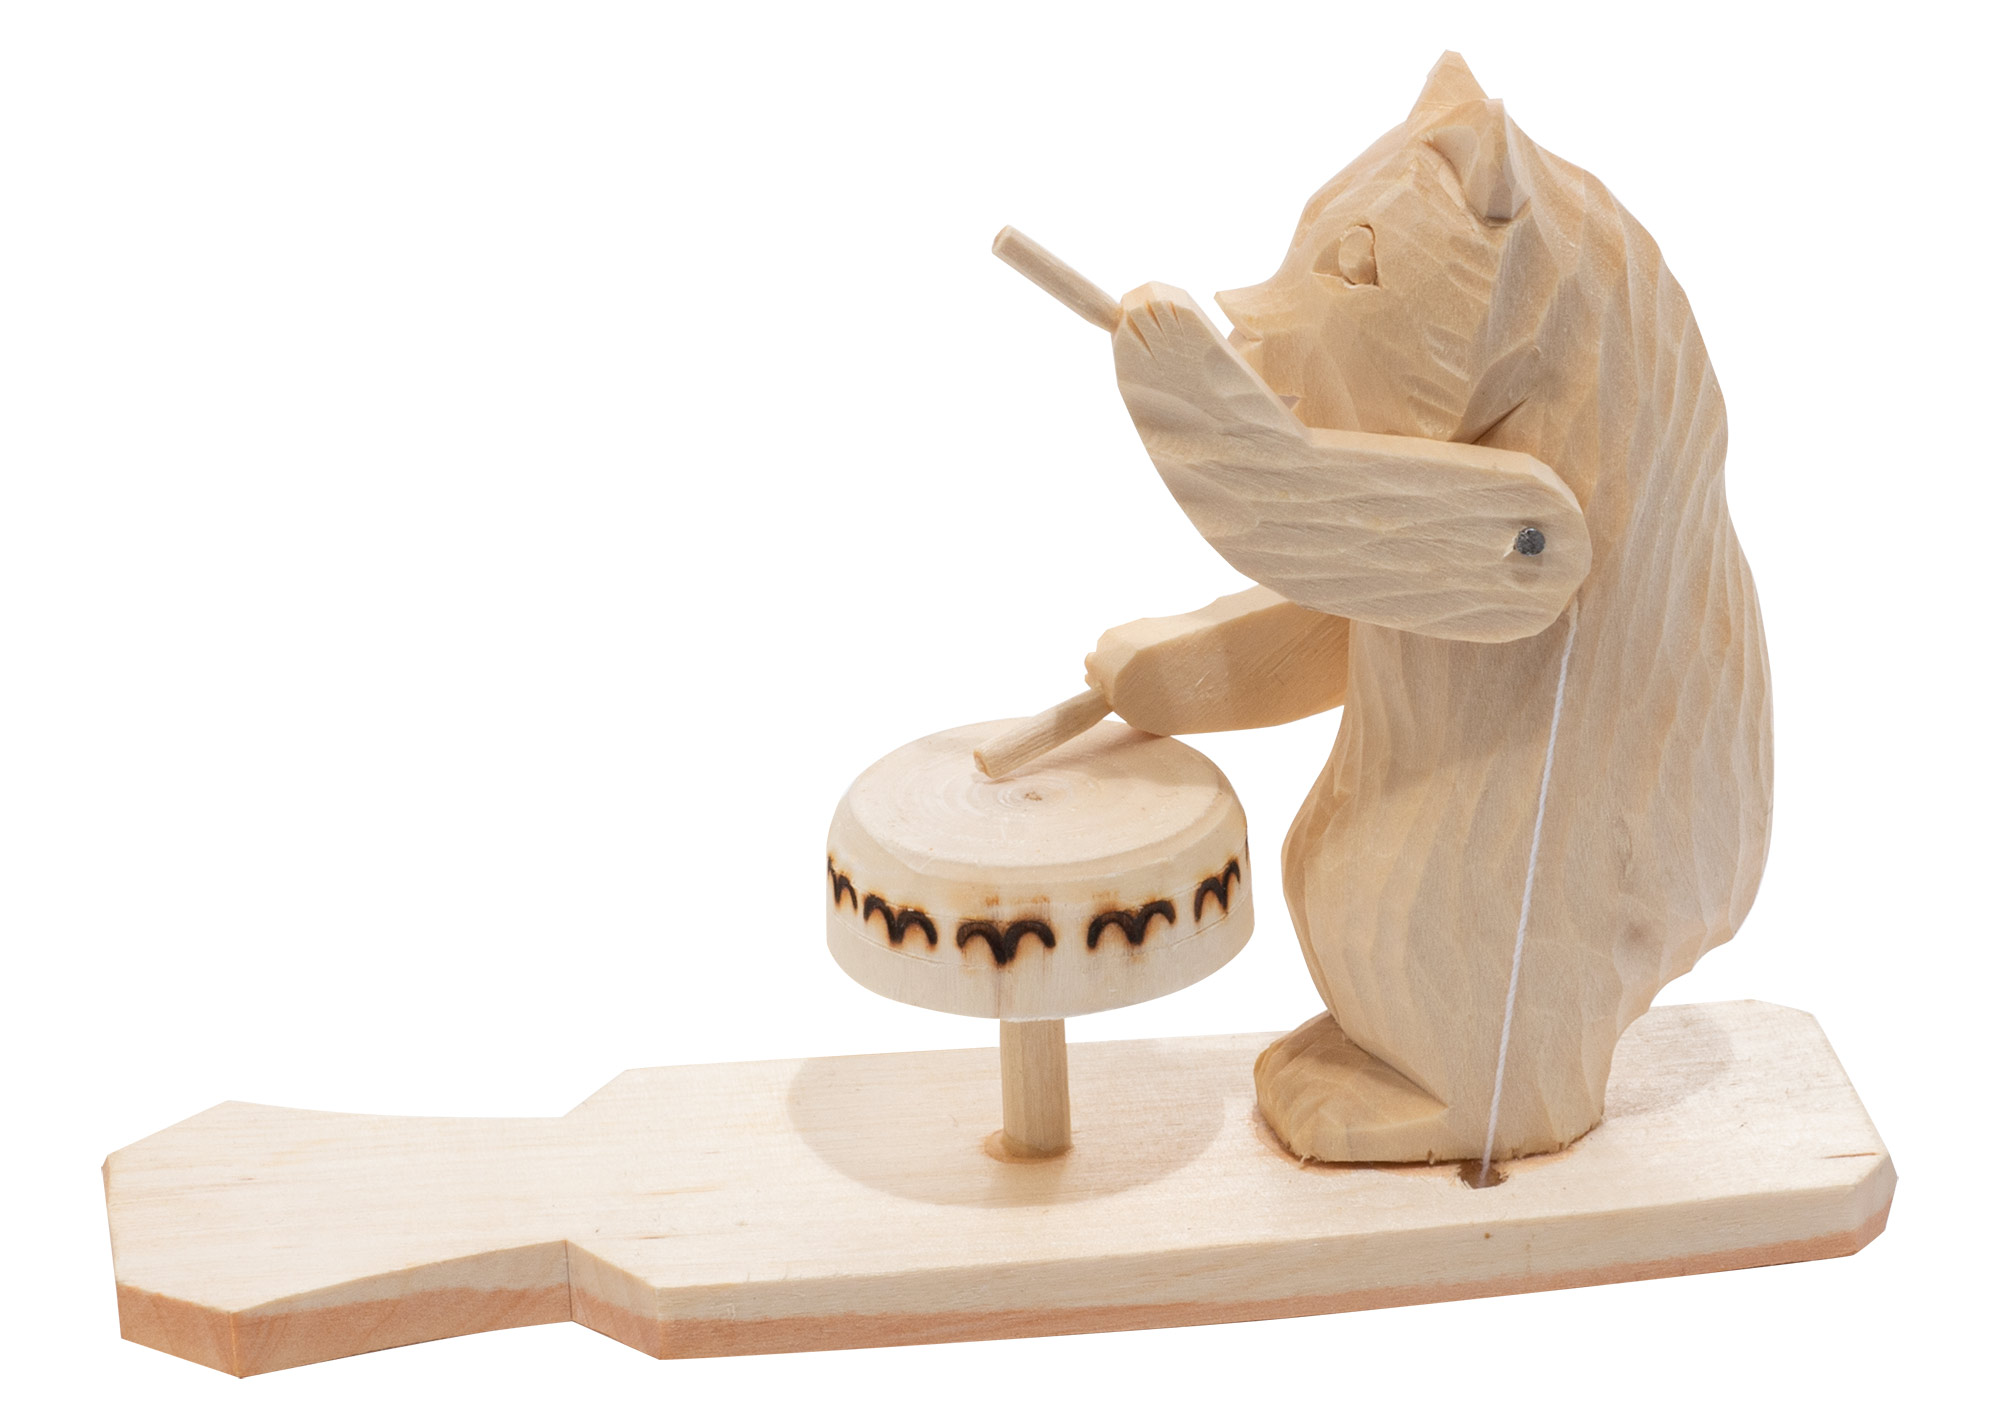 Buy Drummer Bear Carved Toy at GoldenCockerel.com